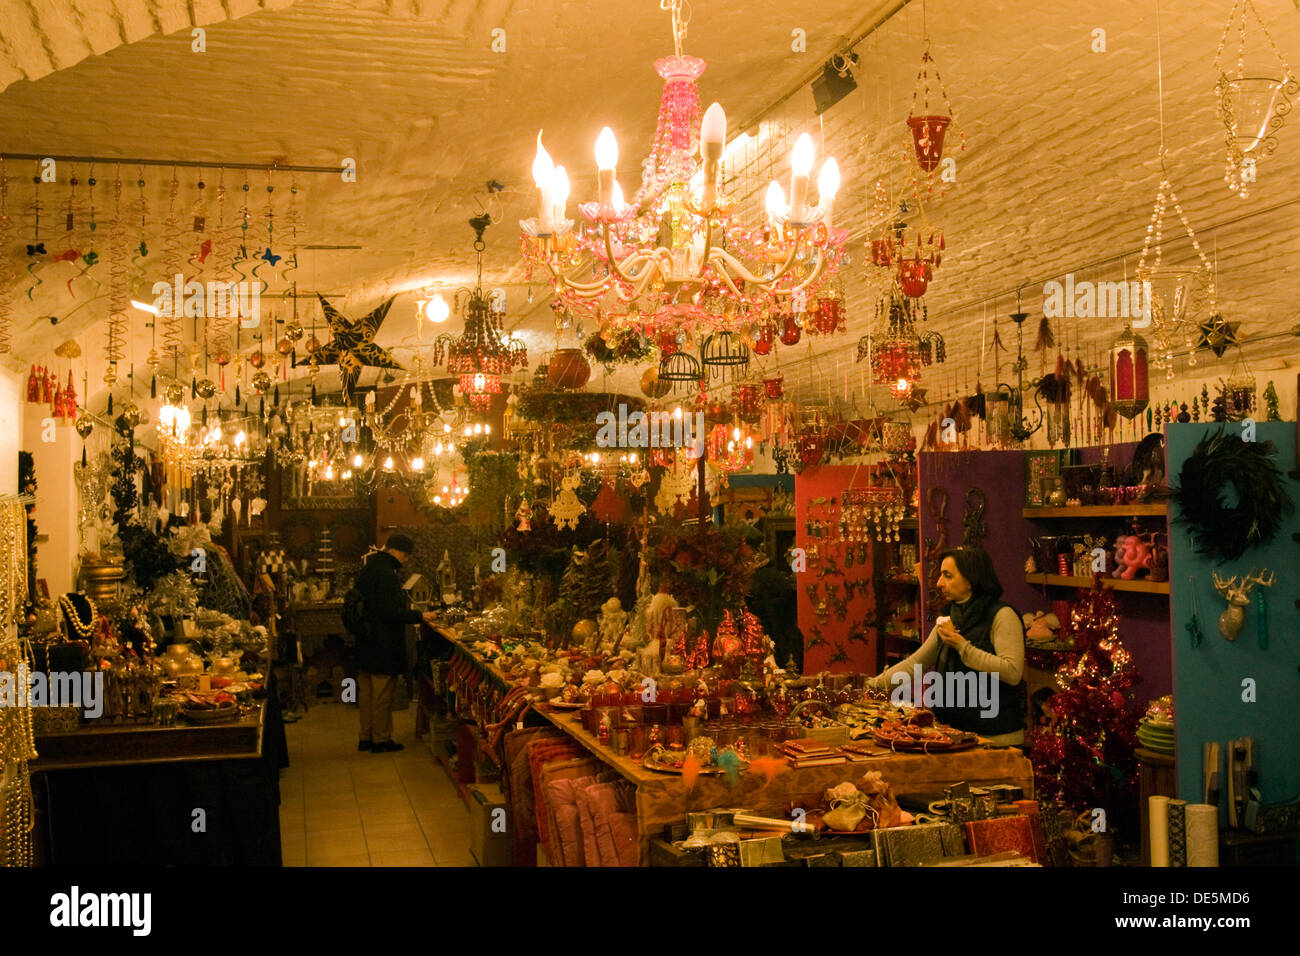 Österreich, Wien 7, Spittelberg, der traditionelle Spittelberger Weihnachtsmarkt bietet Kunsthandwerk zum Schauen und Kaufen. Stock Photo